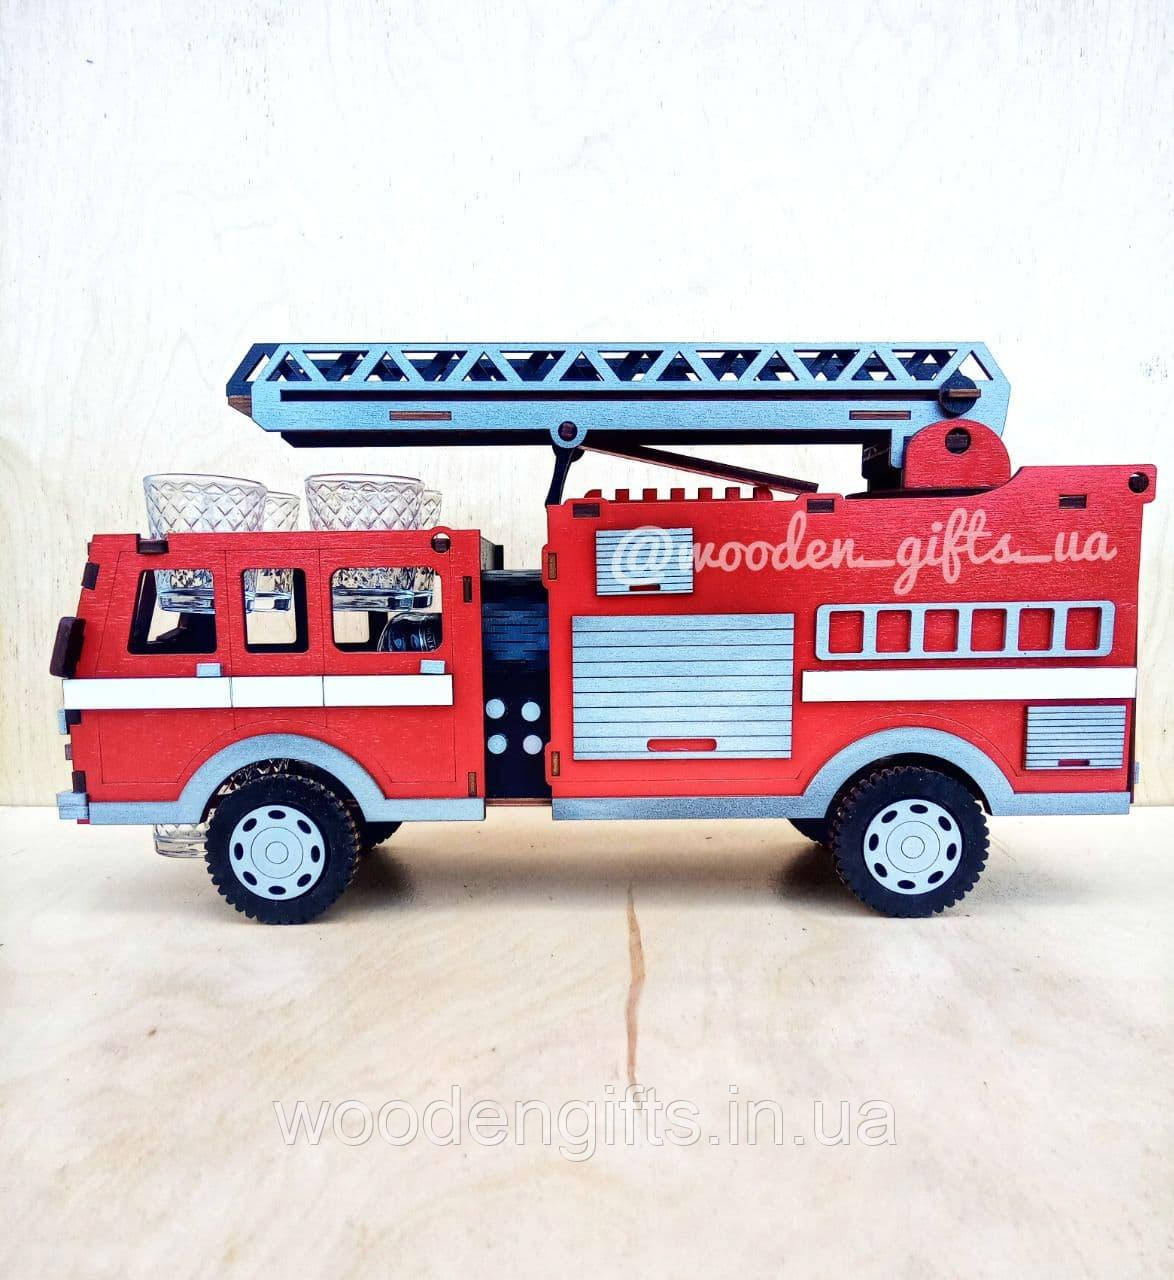 Міні бар Пожежна машина з дерева для подарунка пожежнику, рятувальнику, чоловіку